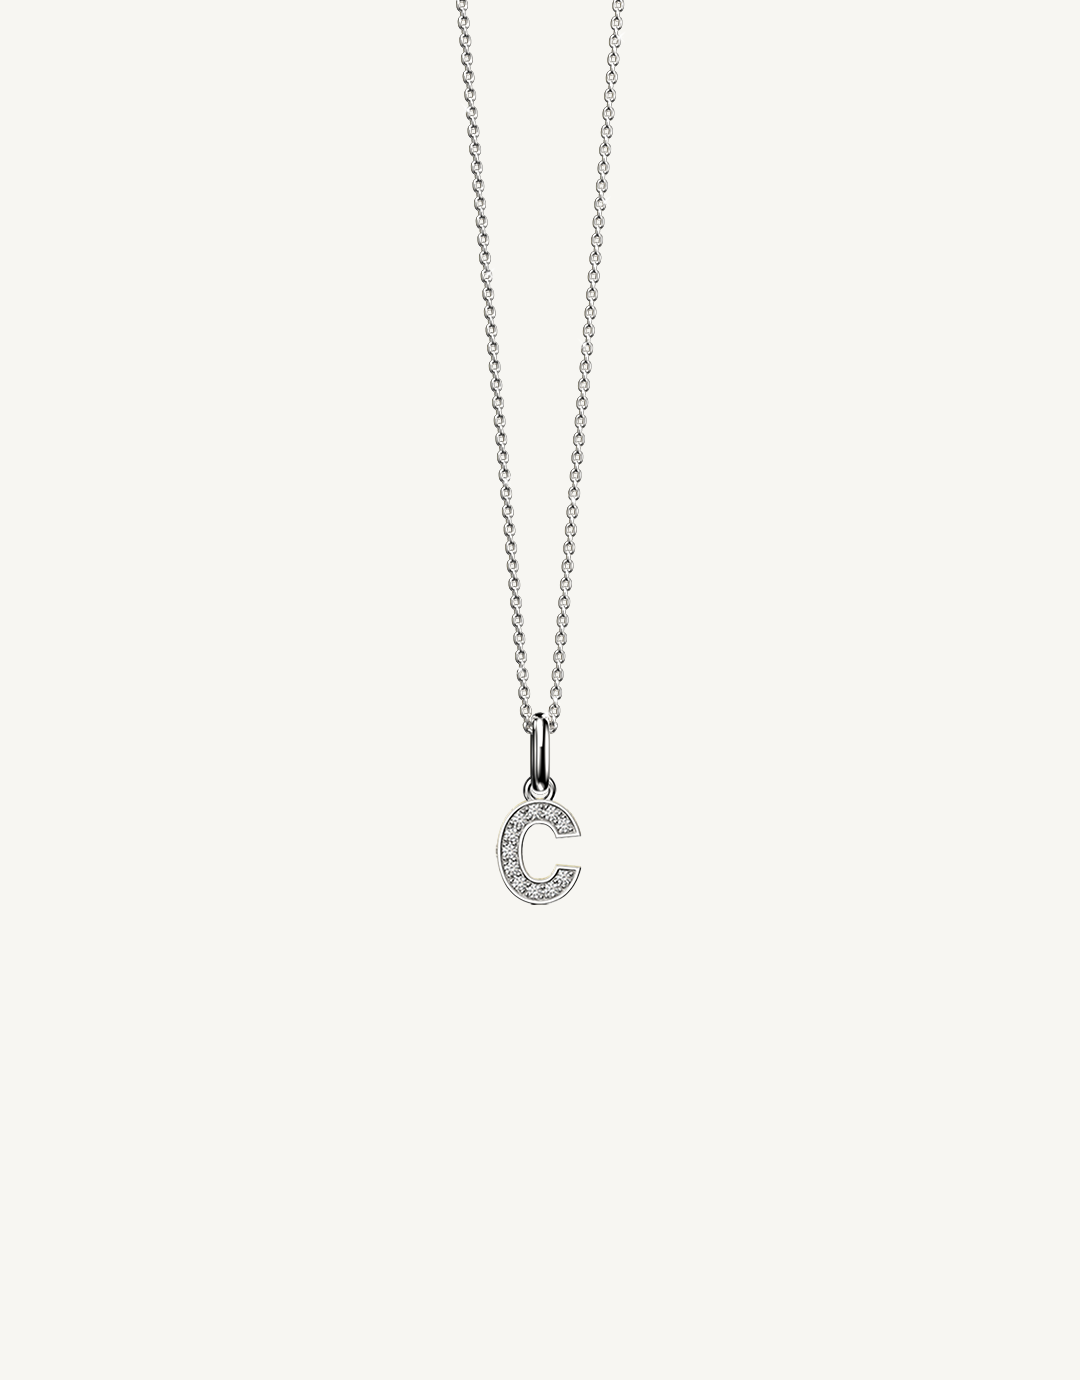 18k white gold diamond initial pendant. Luxury custom design. Initial C.